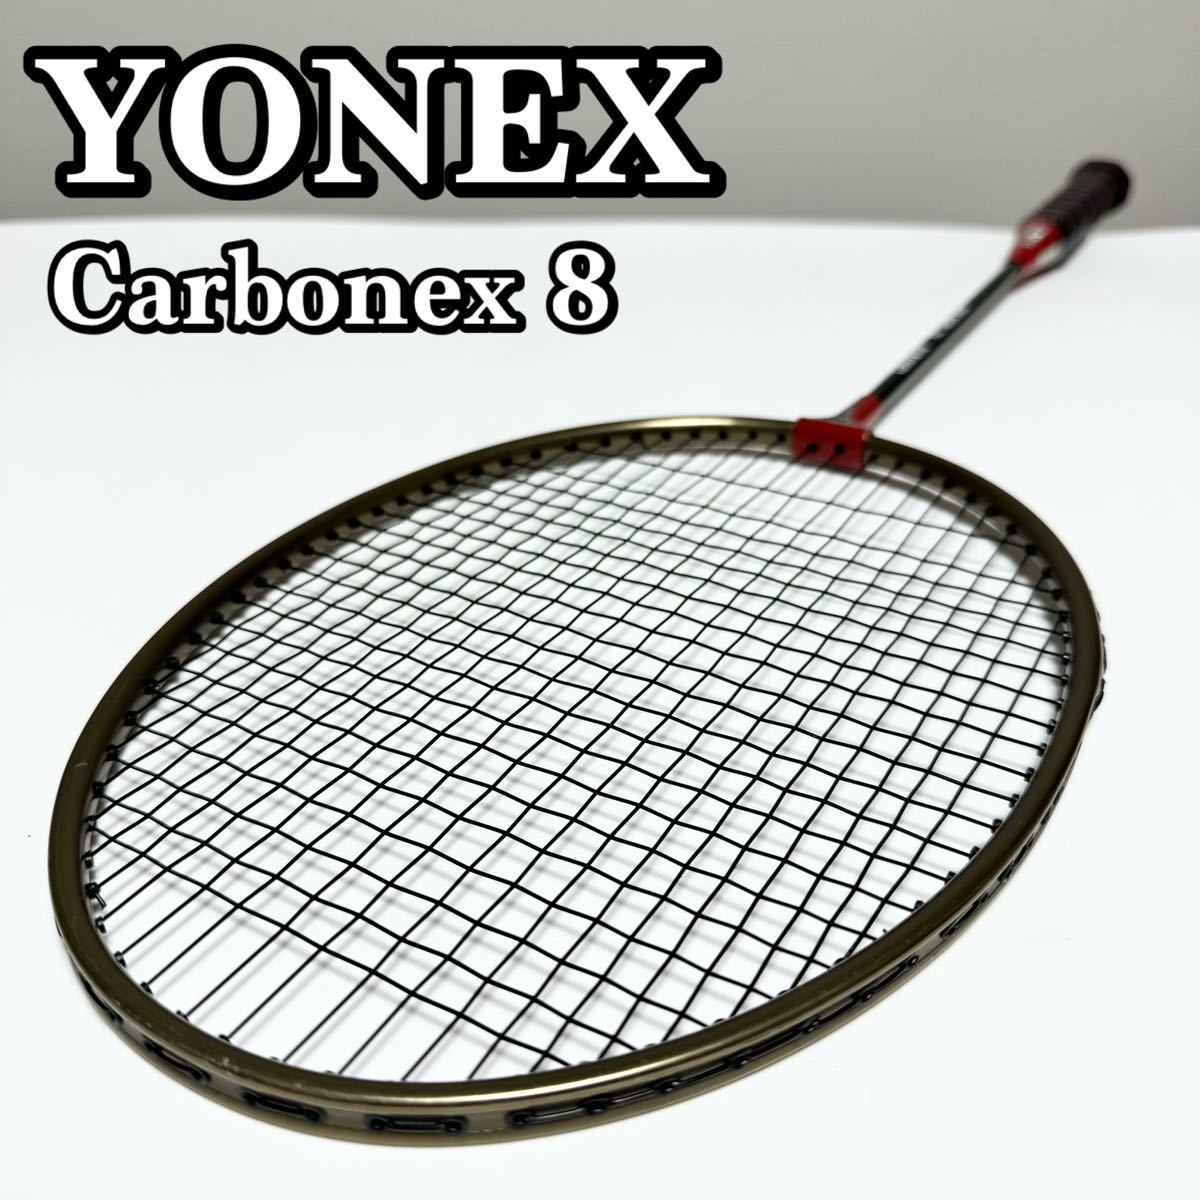 【貴重】YONEX ヨネックス Carbonex8 カーボネックス B-8500R バドミントンラケット カーボネクス 貴重品 希少品 入手困難